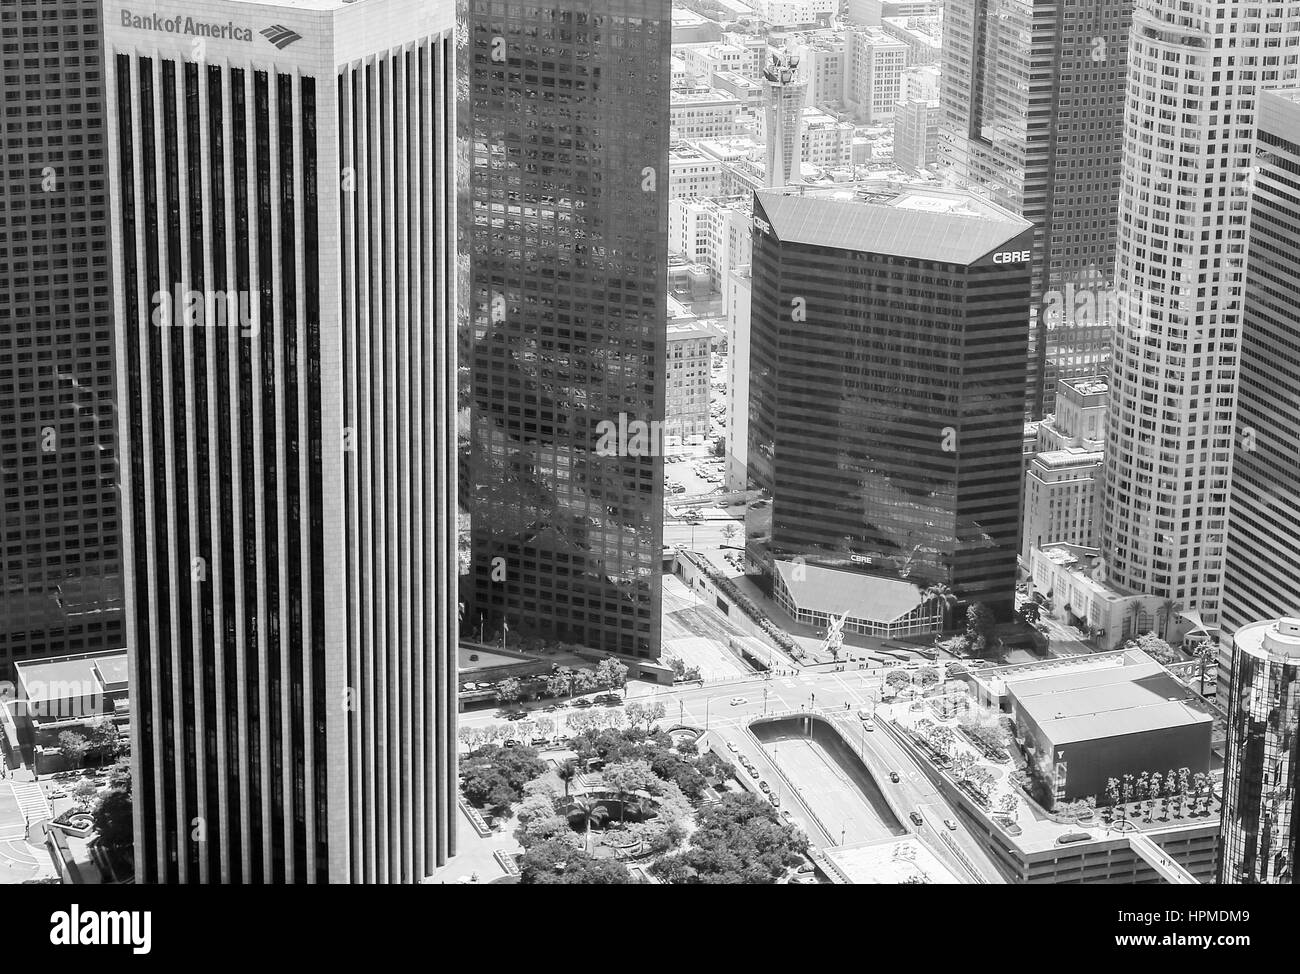 Los Angeles, États-Unis - 27 mai 2015 : Détail de l'horizon du centre-ville de Los Angeles avec la Banque d'Amérique Centre à l'avant-plan. La photo est en bl Banque D'Images